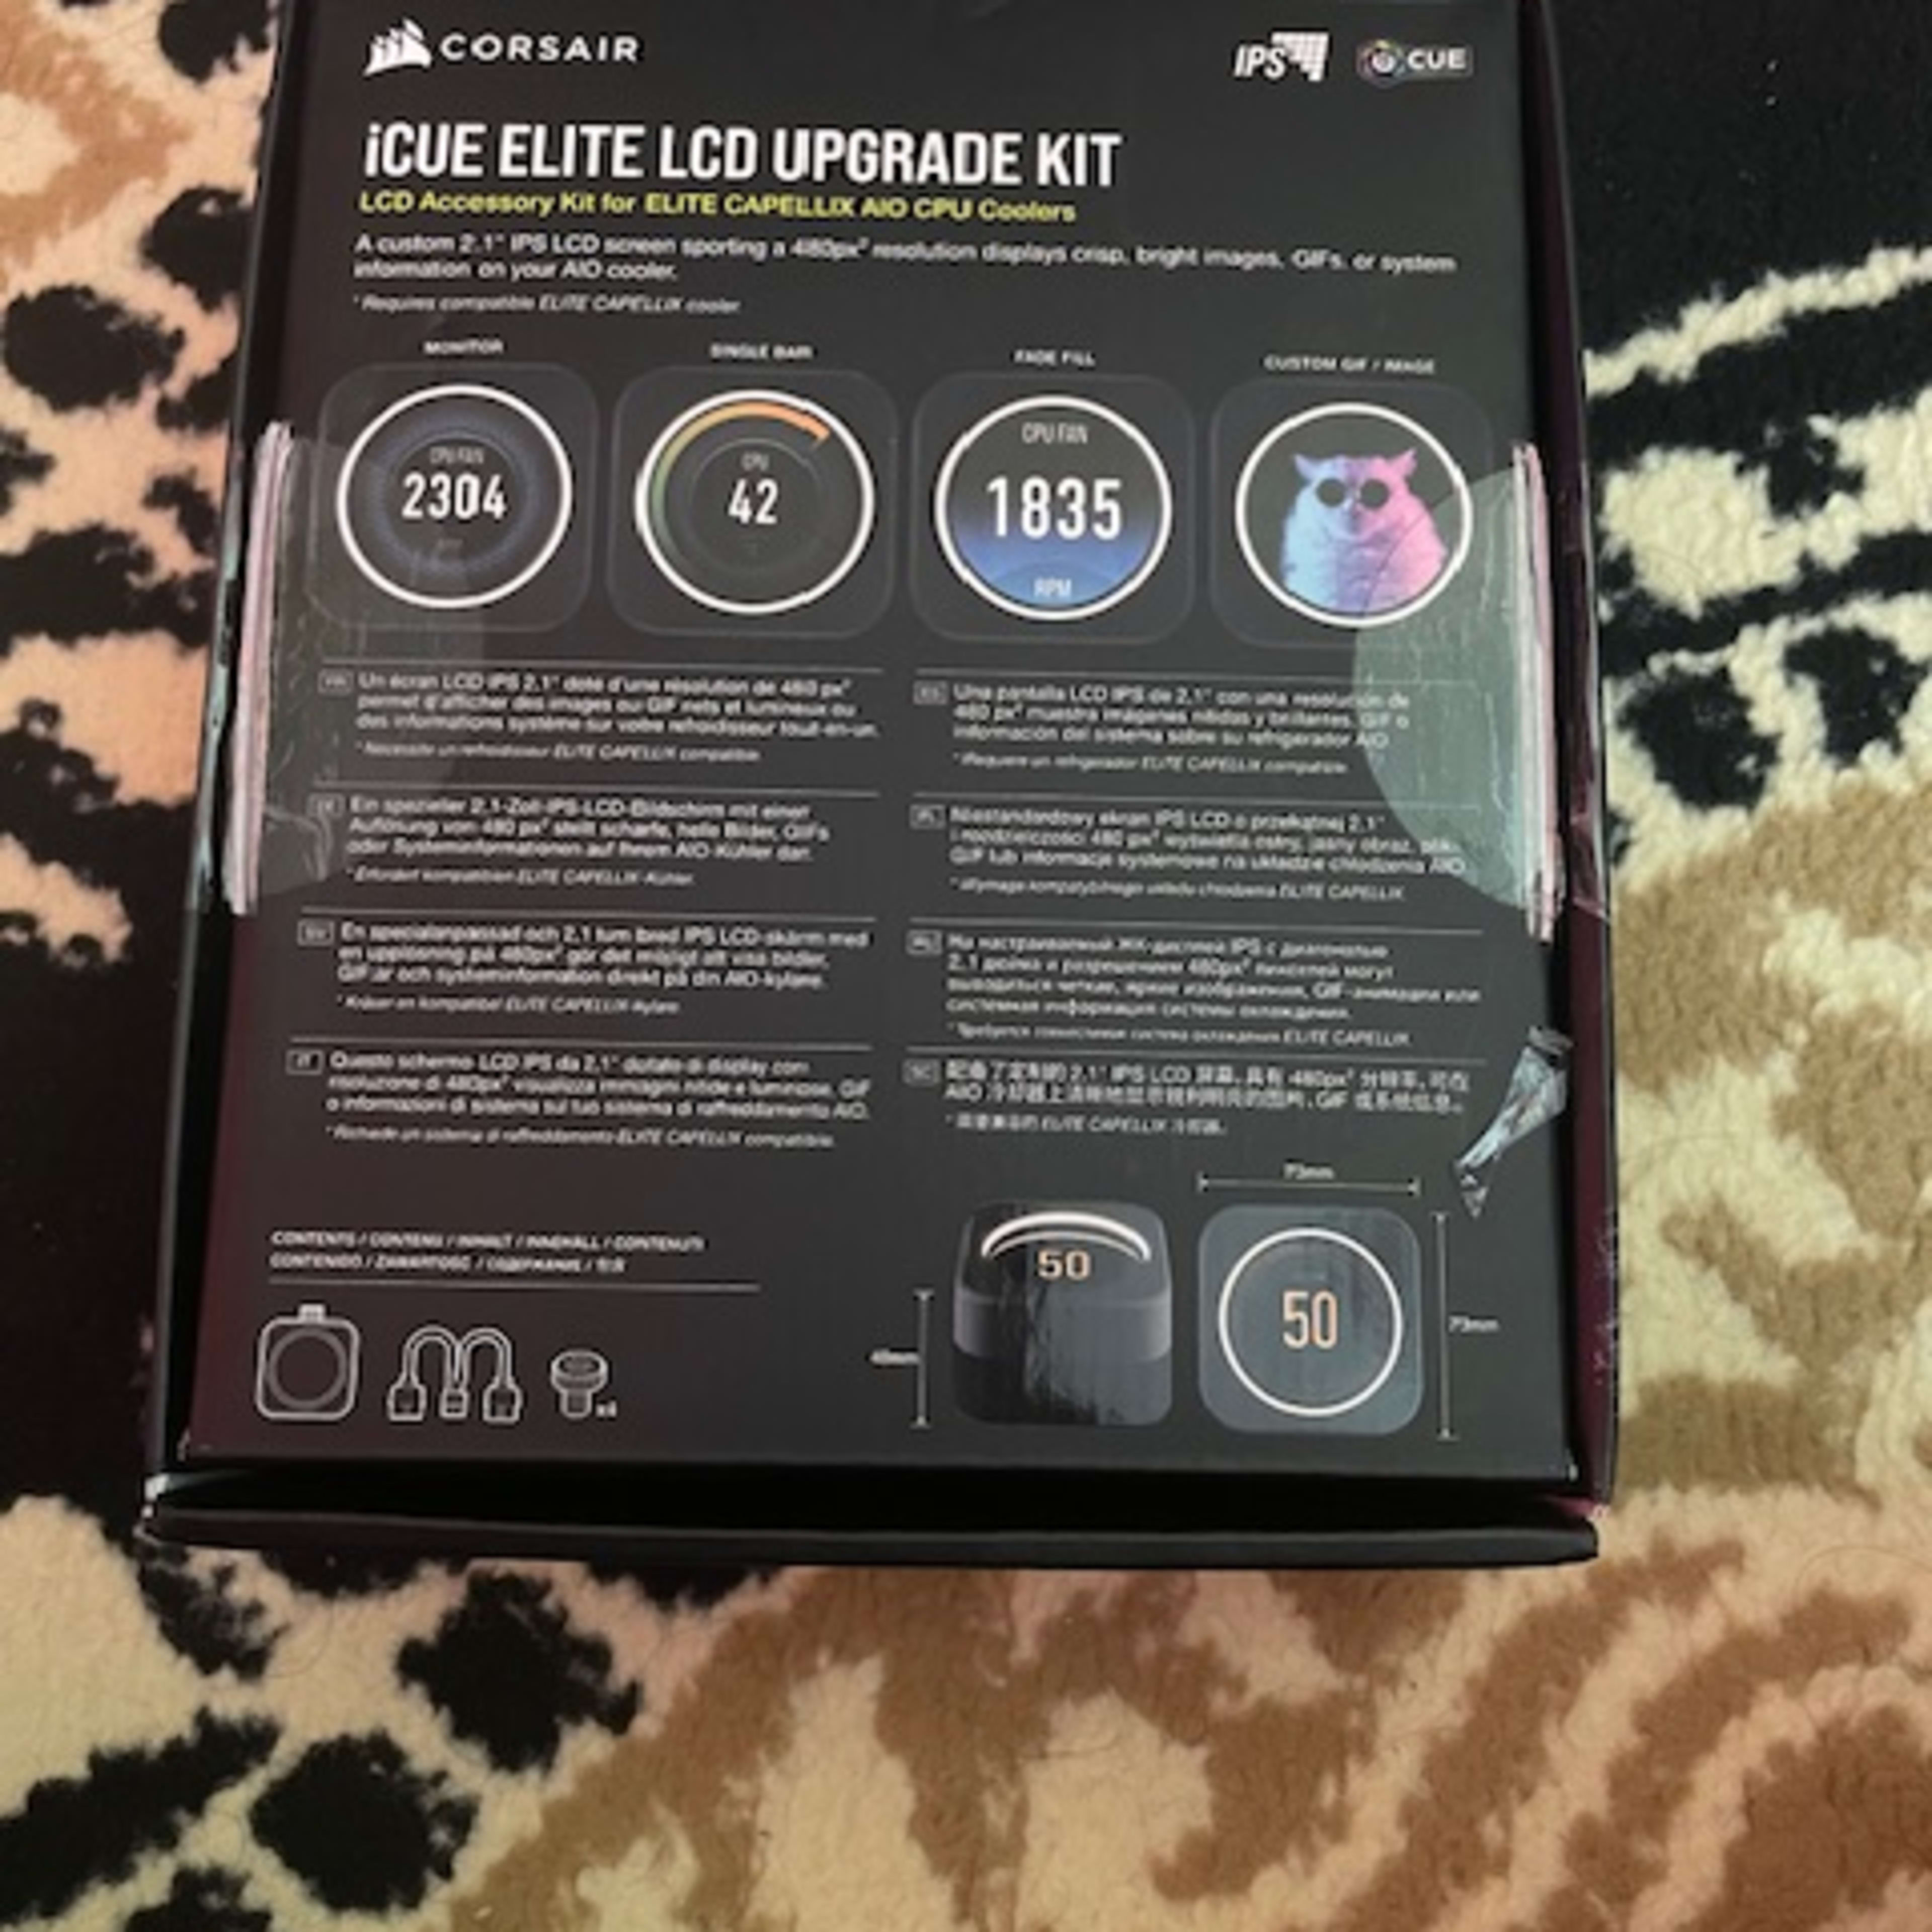 Corsair LCD Elite upgrade kit